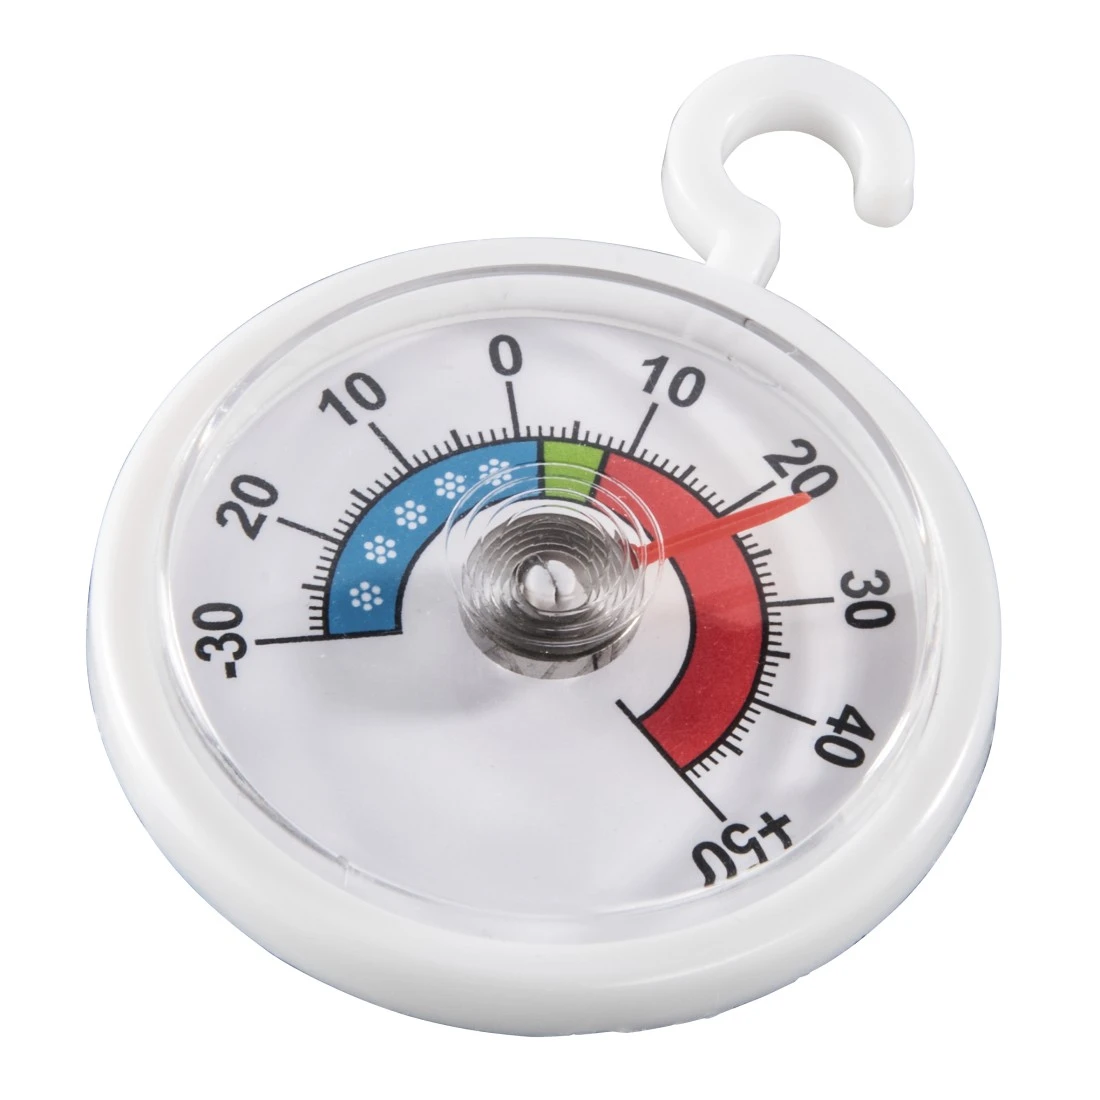 Analoges Thermometer für Kühlschrank, Gefrierschrank und Kühltruhe